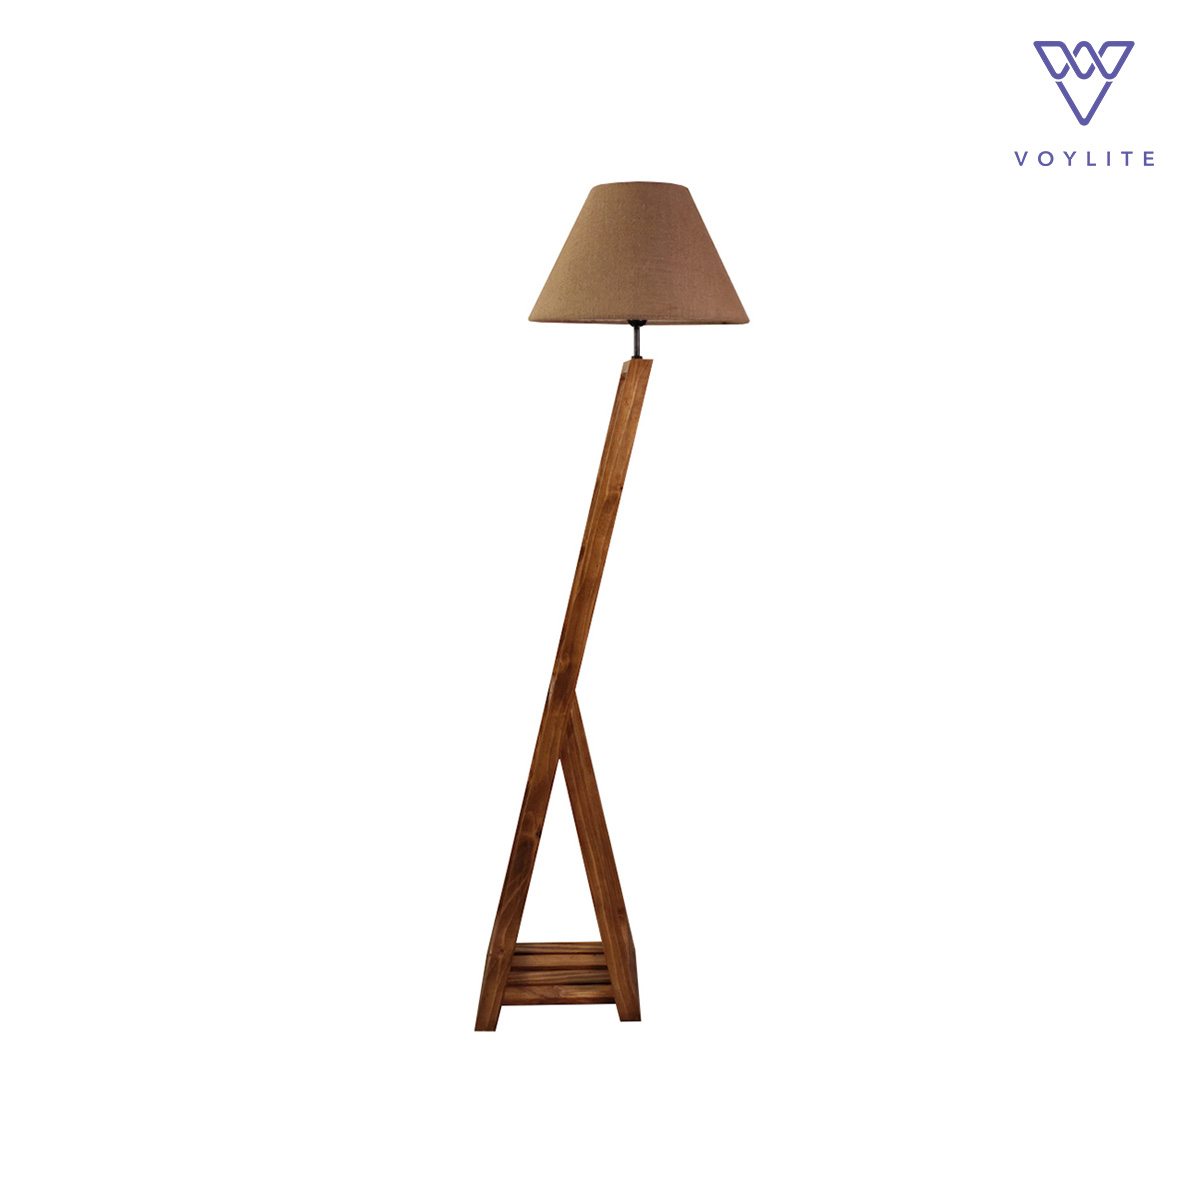 Bezalel Wooden Floor Lamp